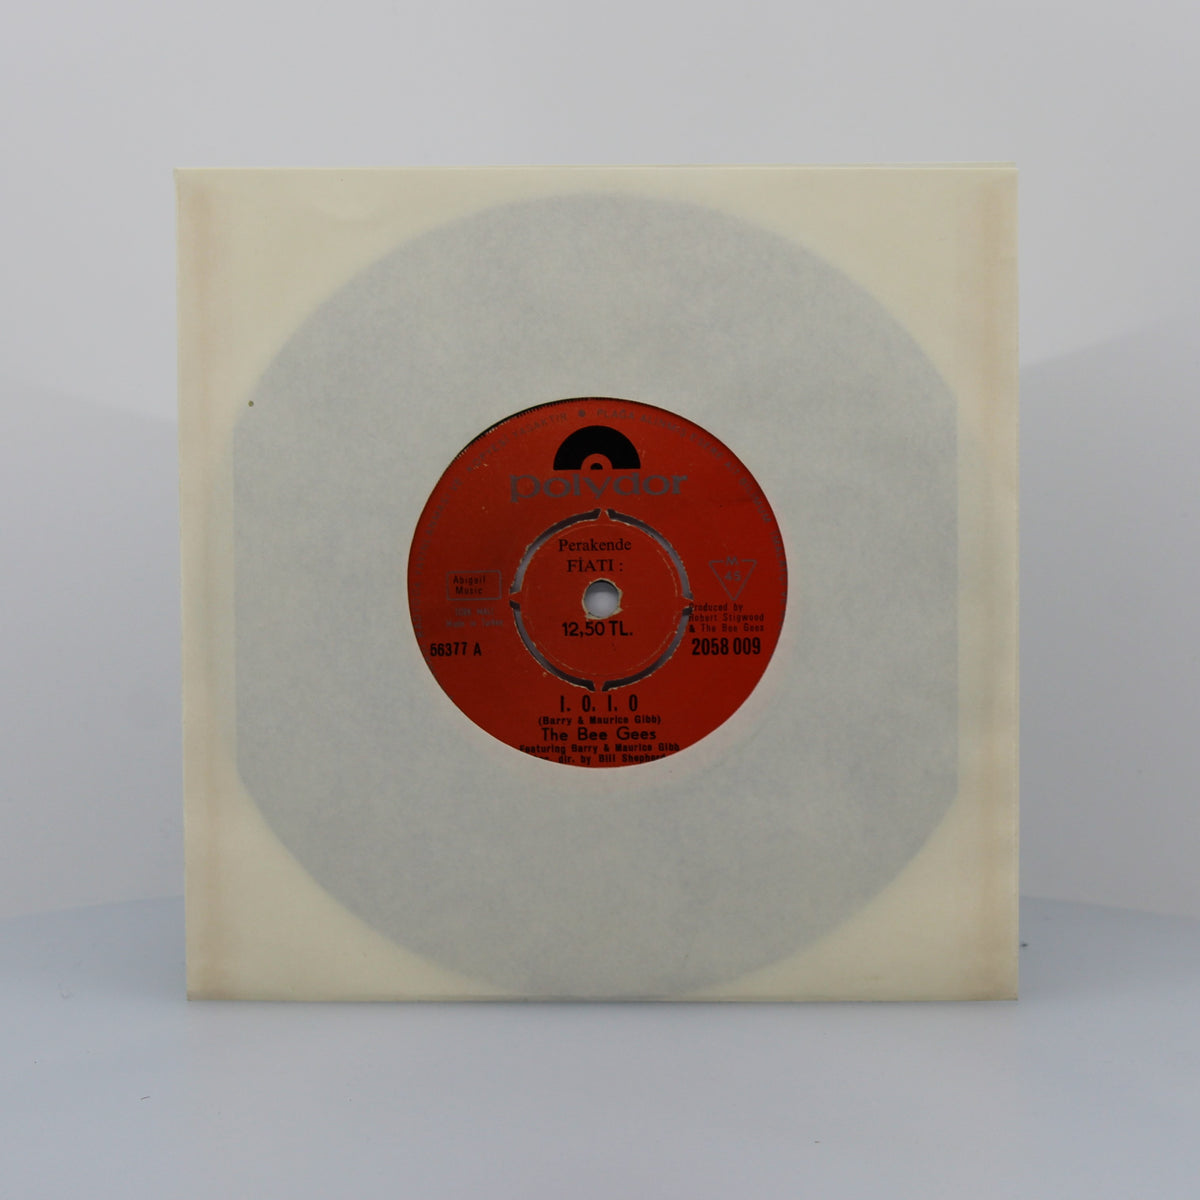 Bee Gees - I.O.I.O., Vinyl 7&quot; Single 45Rpm, Turkey 1970